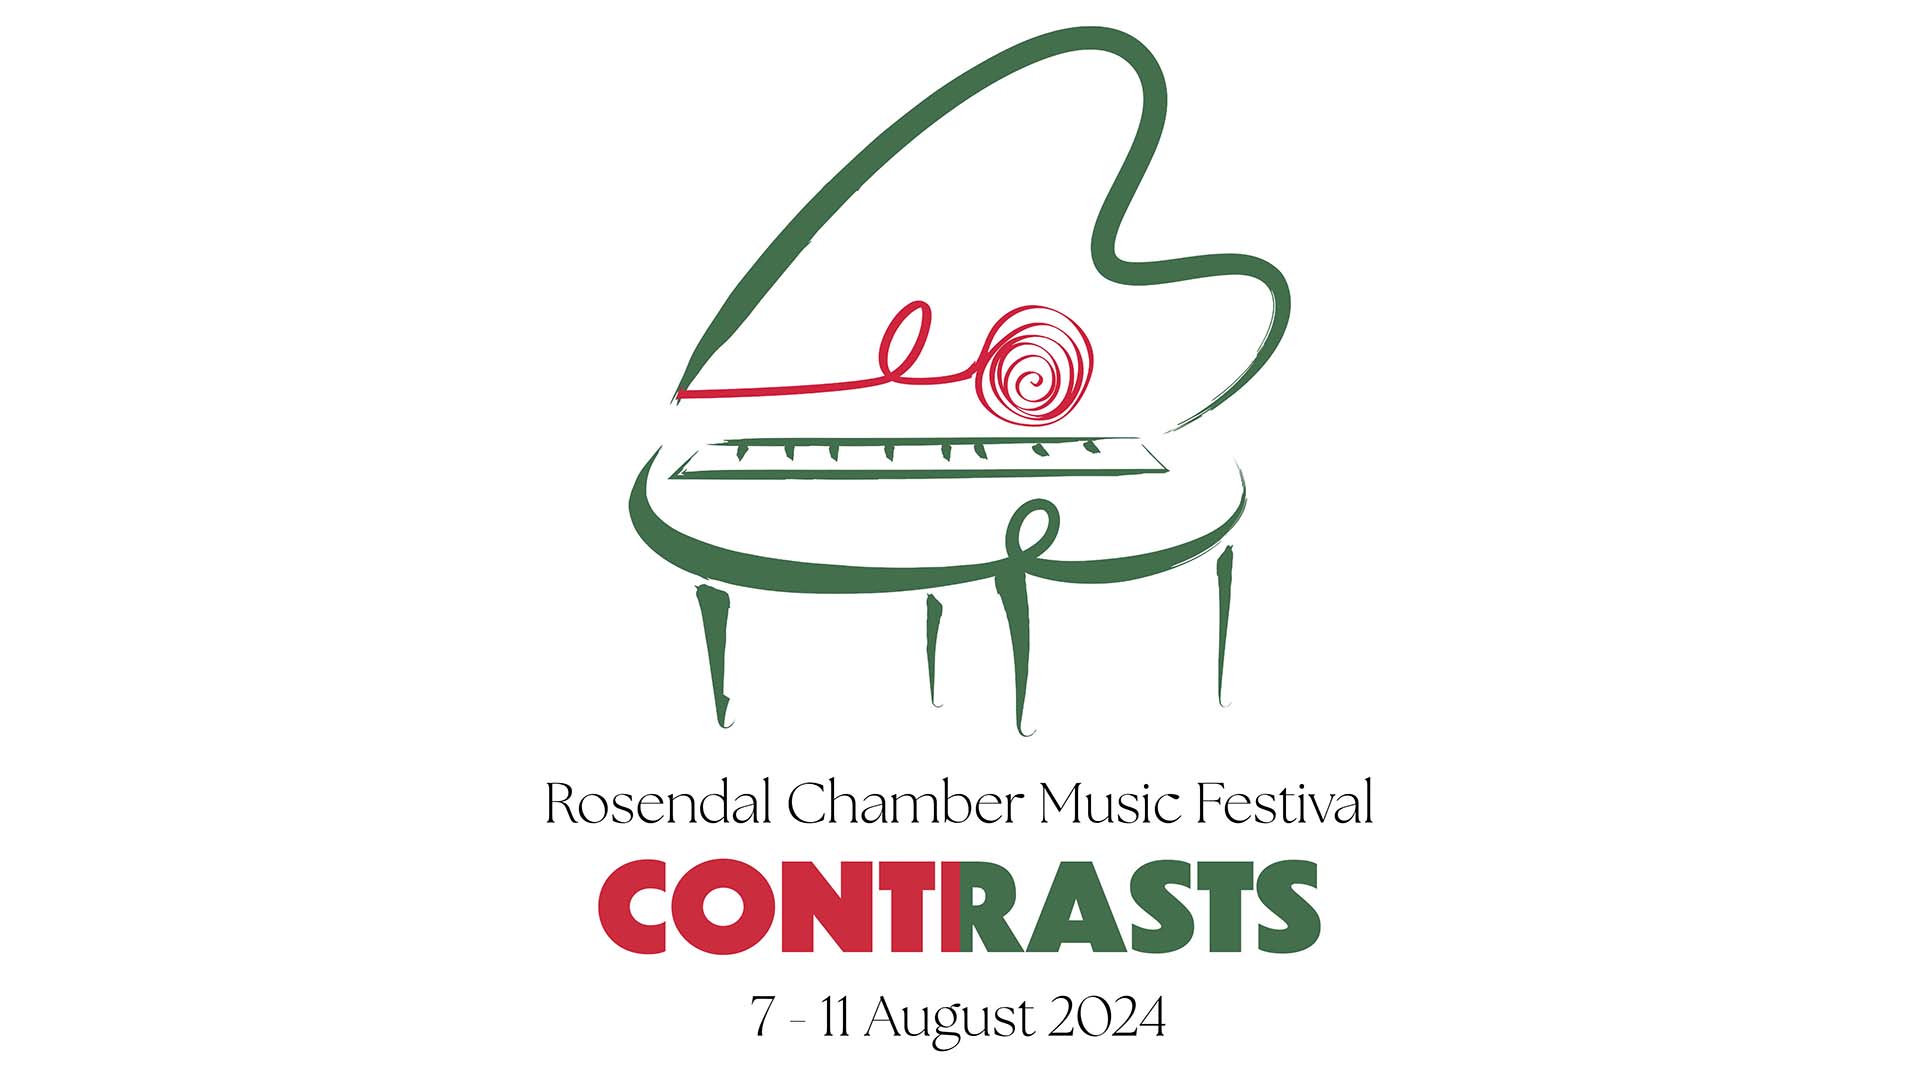 2024 Rosendal Chamber Music Festival "Contrasts" Logo